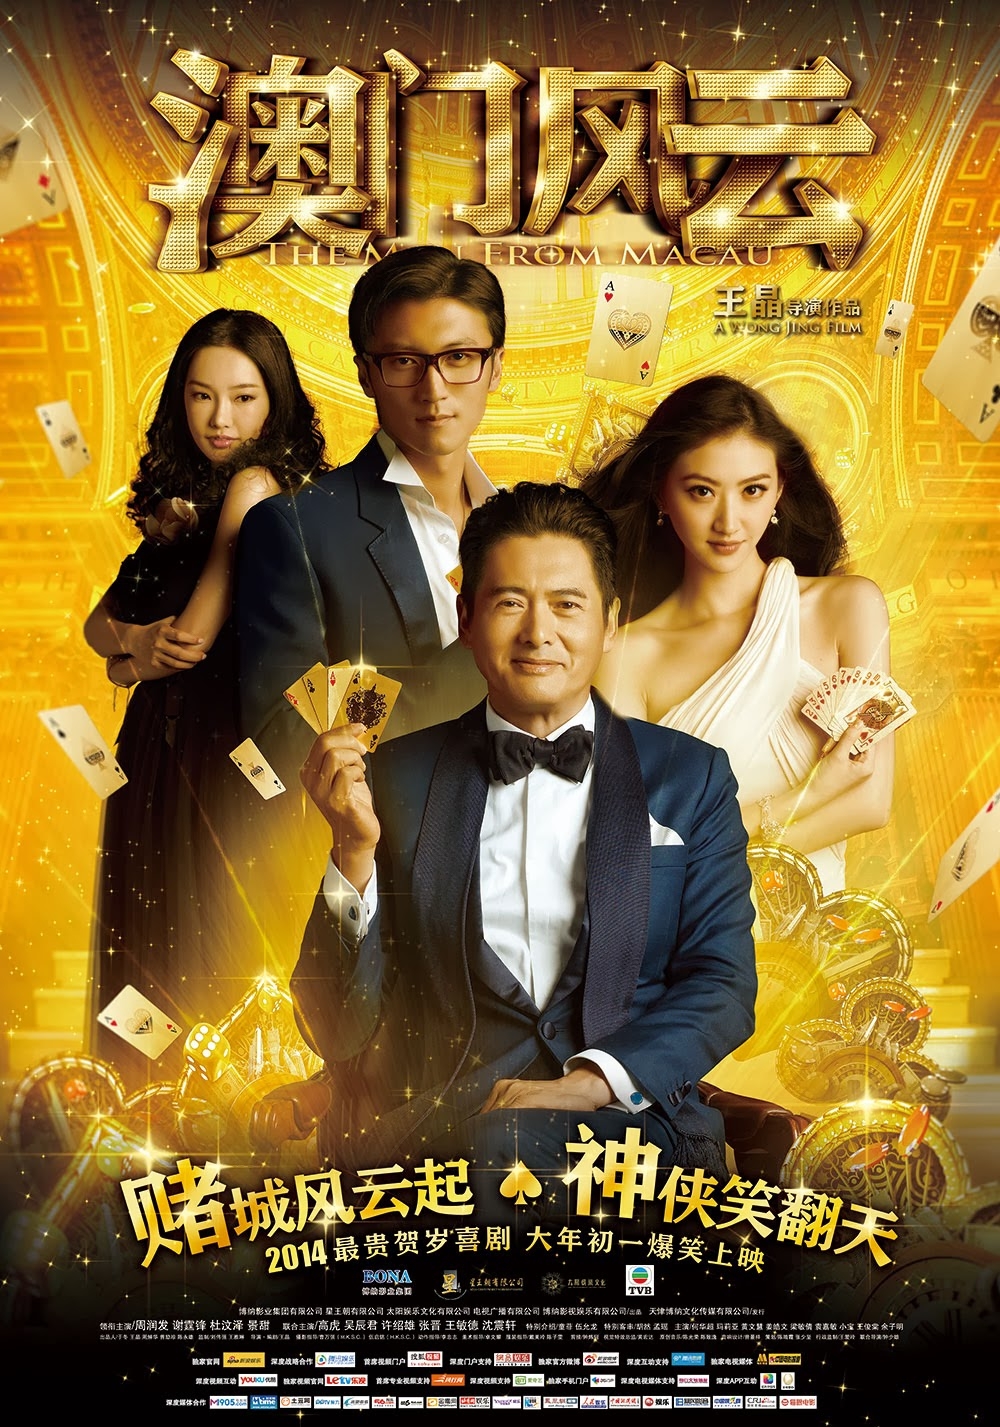 Poster phim thần bài nền vàng